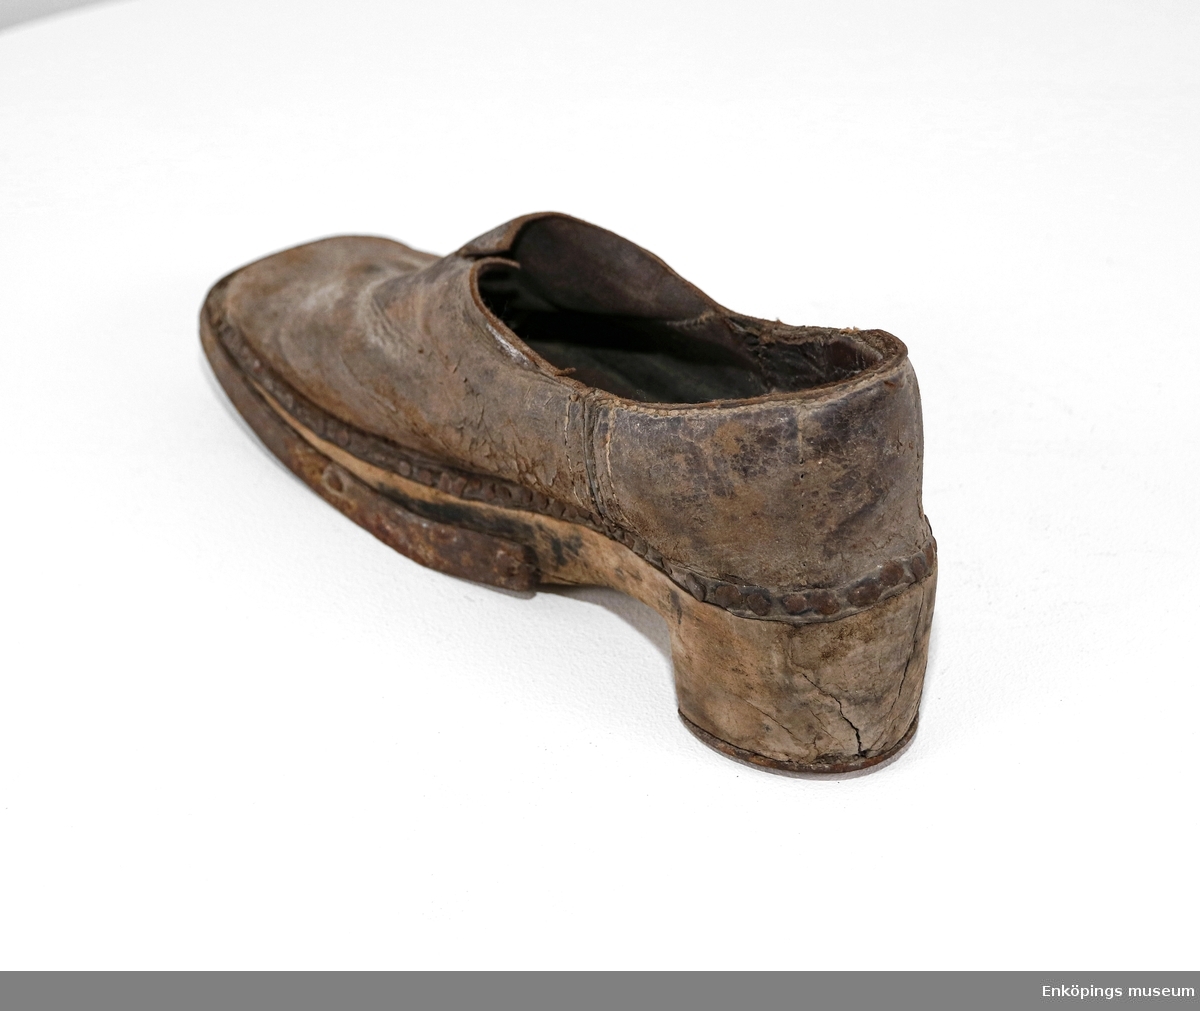 Sko med träbotten och överdel av skinn. Skon är förstärkt med metall runt klacken och sulan. Skon är från 1700-talet.